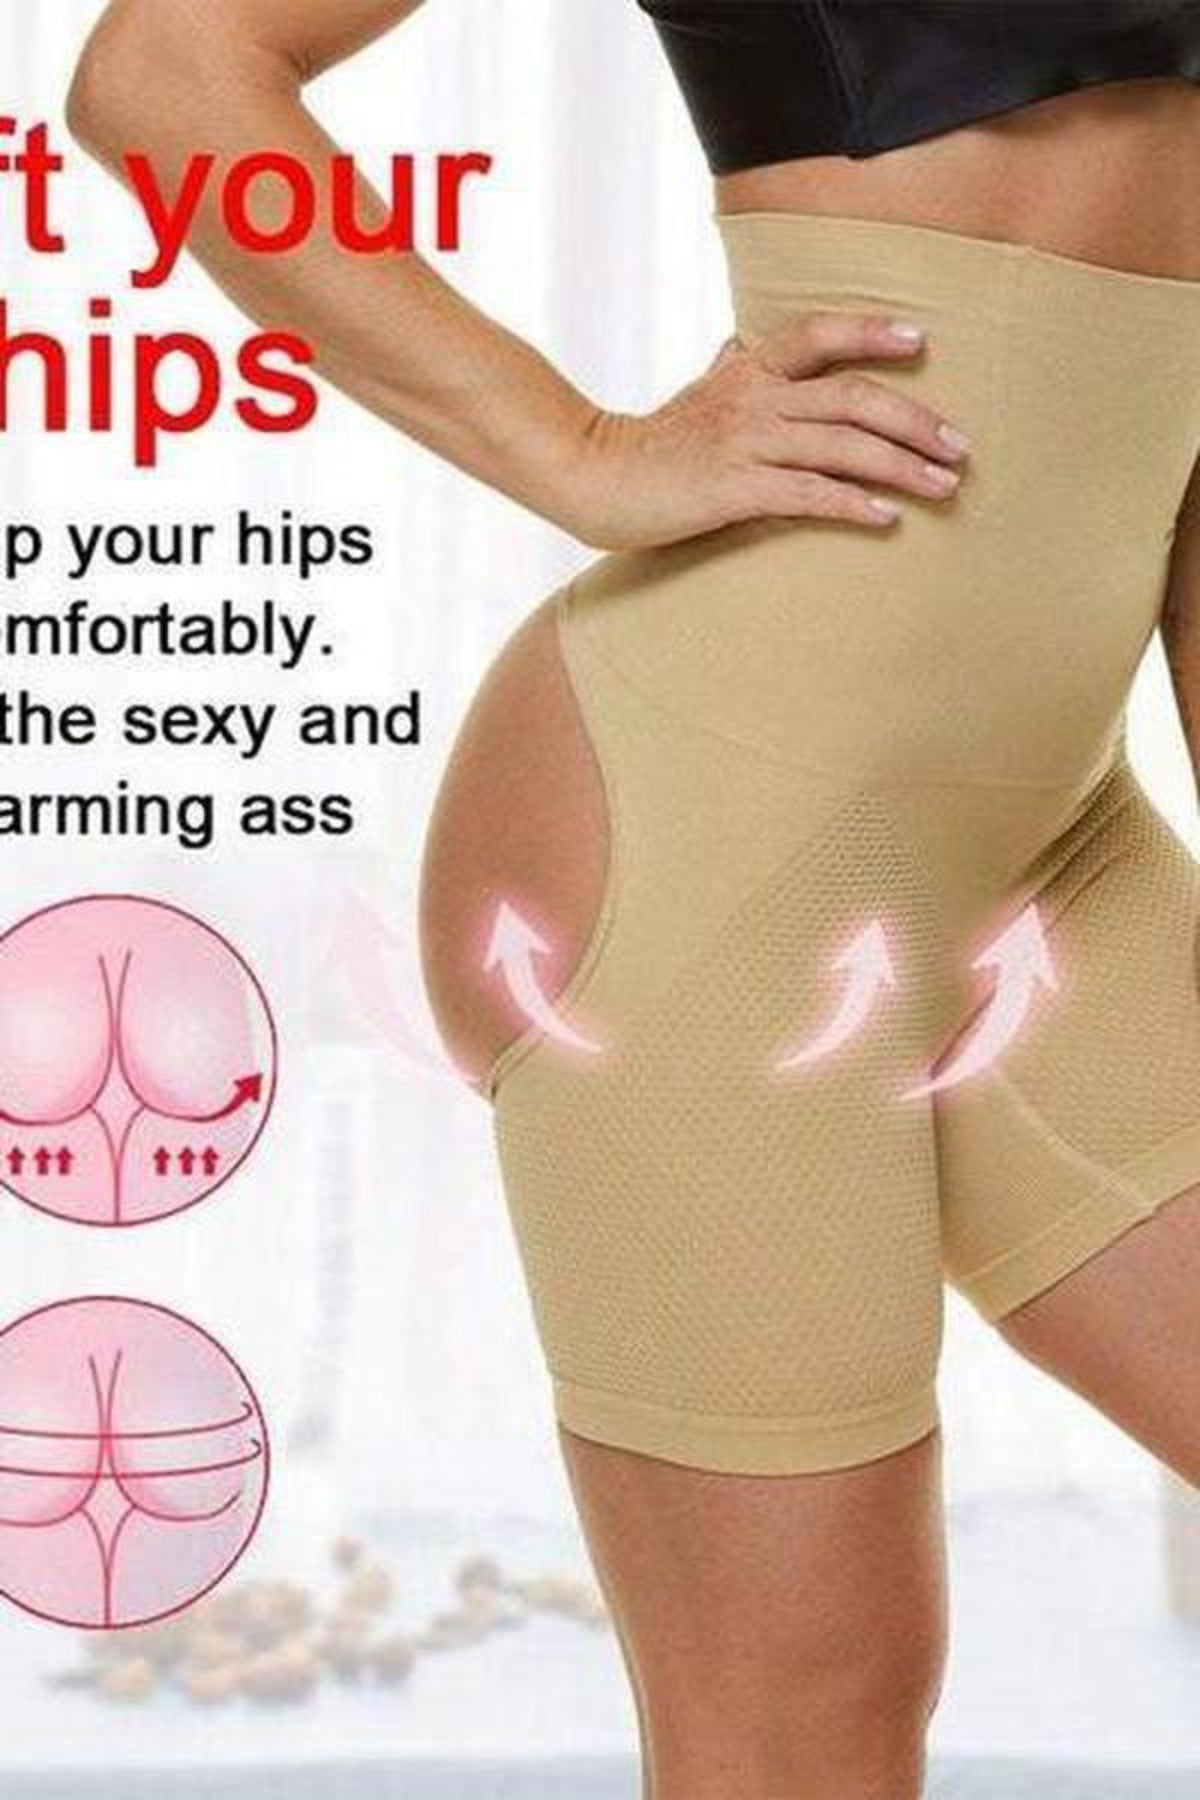 Slimming Body Shaper Women Sexy Push Up Butt Lifter Strap Butt